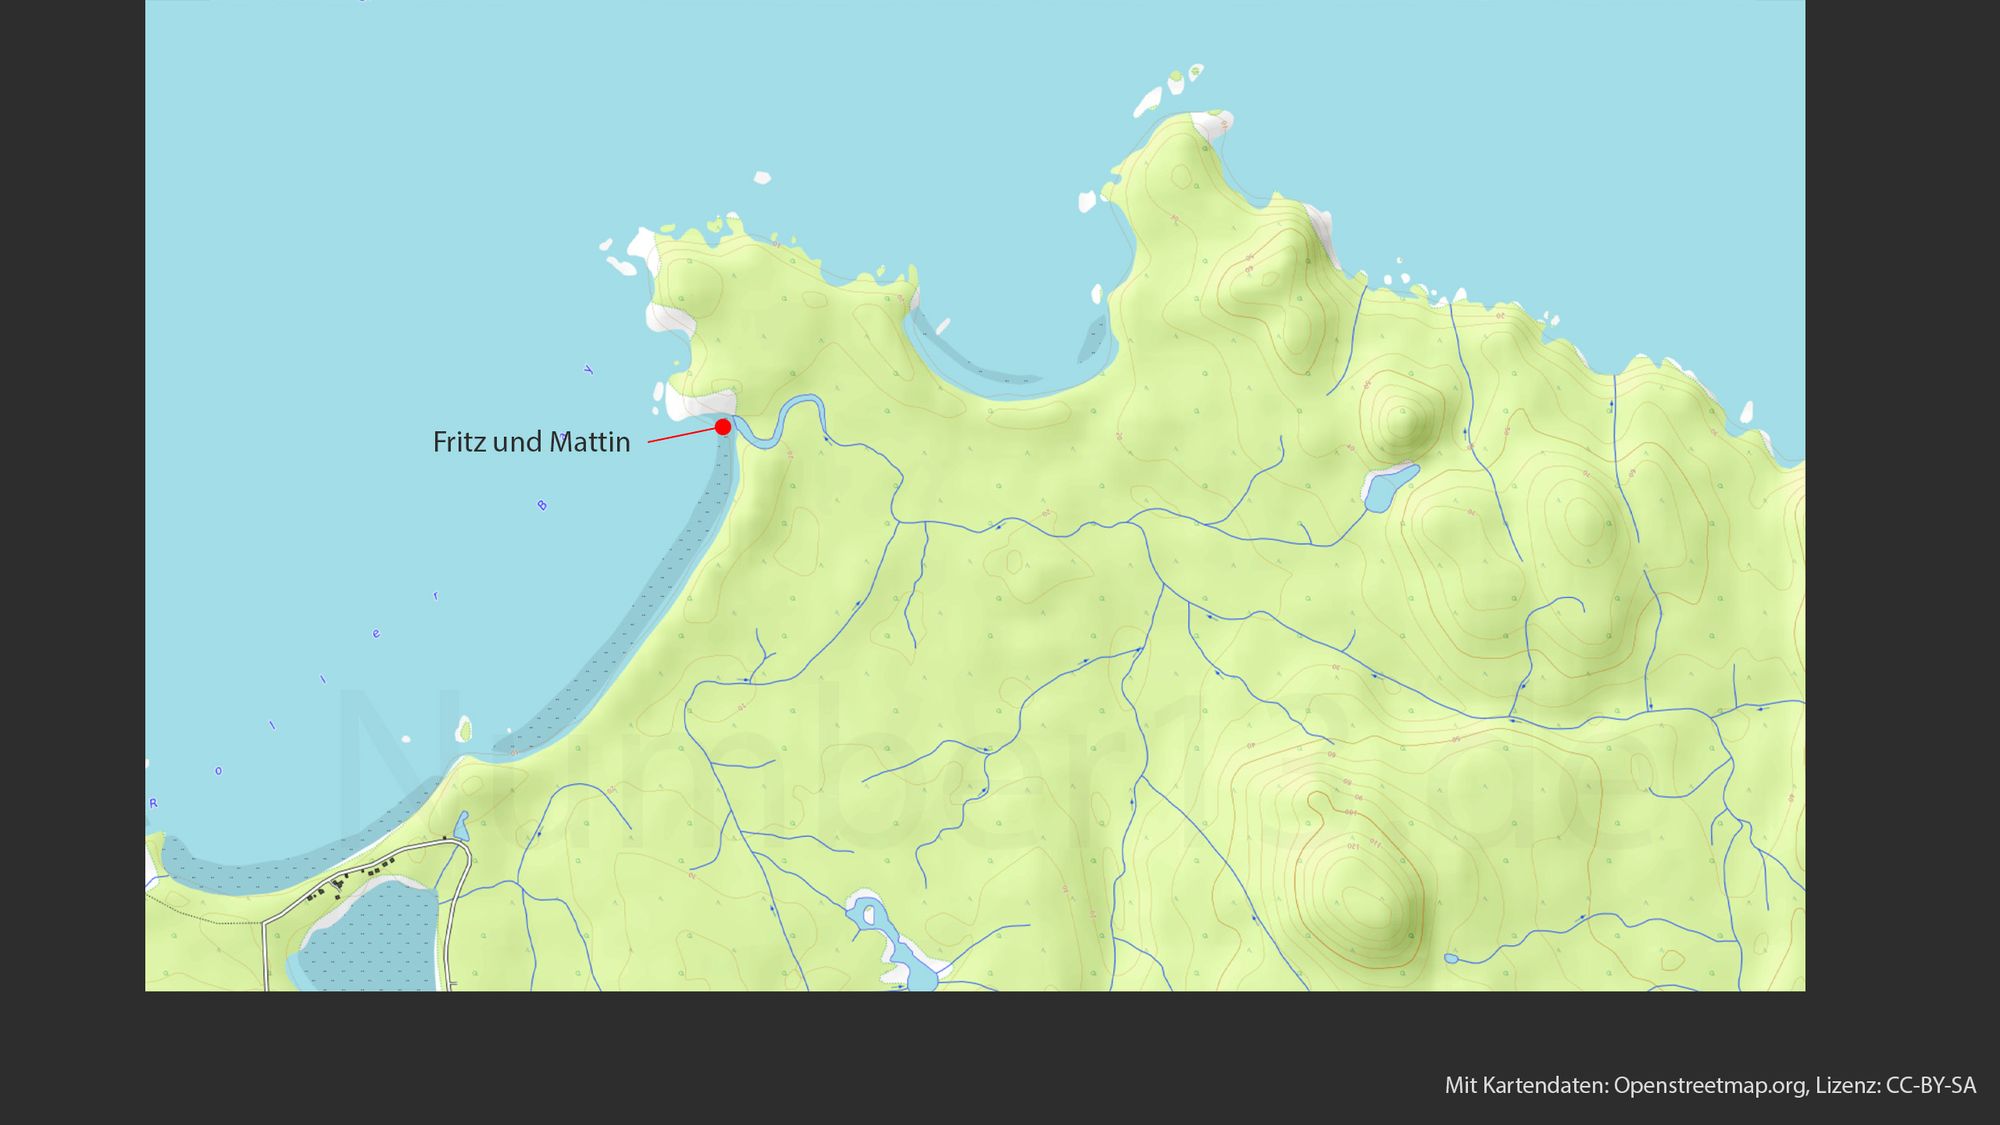 Topografische Karte, die eine Küstenregion mit einer Mischung aus Land und Meer zeigt. Die Landmassen sind in gelben und grünen Farbtönen gehalten, was Höhenunterschiede anzeigt. Ein roter Punkt mit einem Pfeil ist beschriftet mit "Fritz und Mattin" und liegt nahe der Küstenlinie, die mit einer blauen Farbe markiert ist. Mehrere blaue Linien schlängeln sich durch die Landschaft, was auf Flüsse oder Bäche hindeutet. In der unteren Ecke ist ein Hinweis auf die Quelle der Karte: "Mit Kartendaten: Openstreetmap.org, Lizenz: CC-BY-SA"